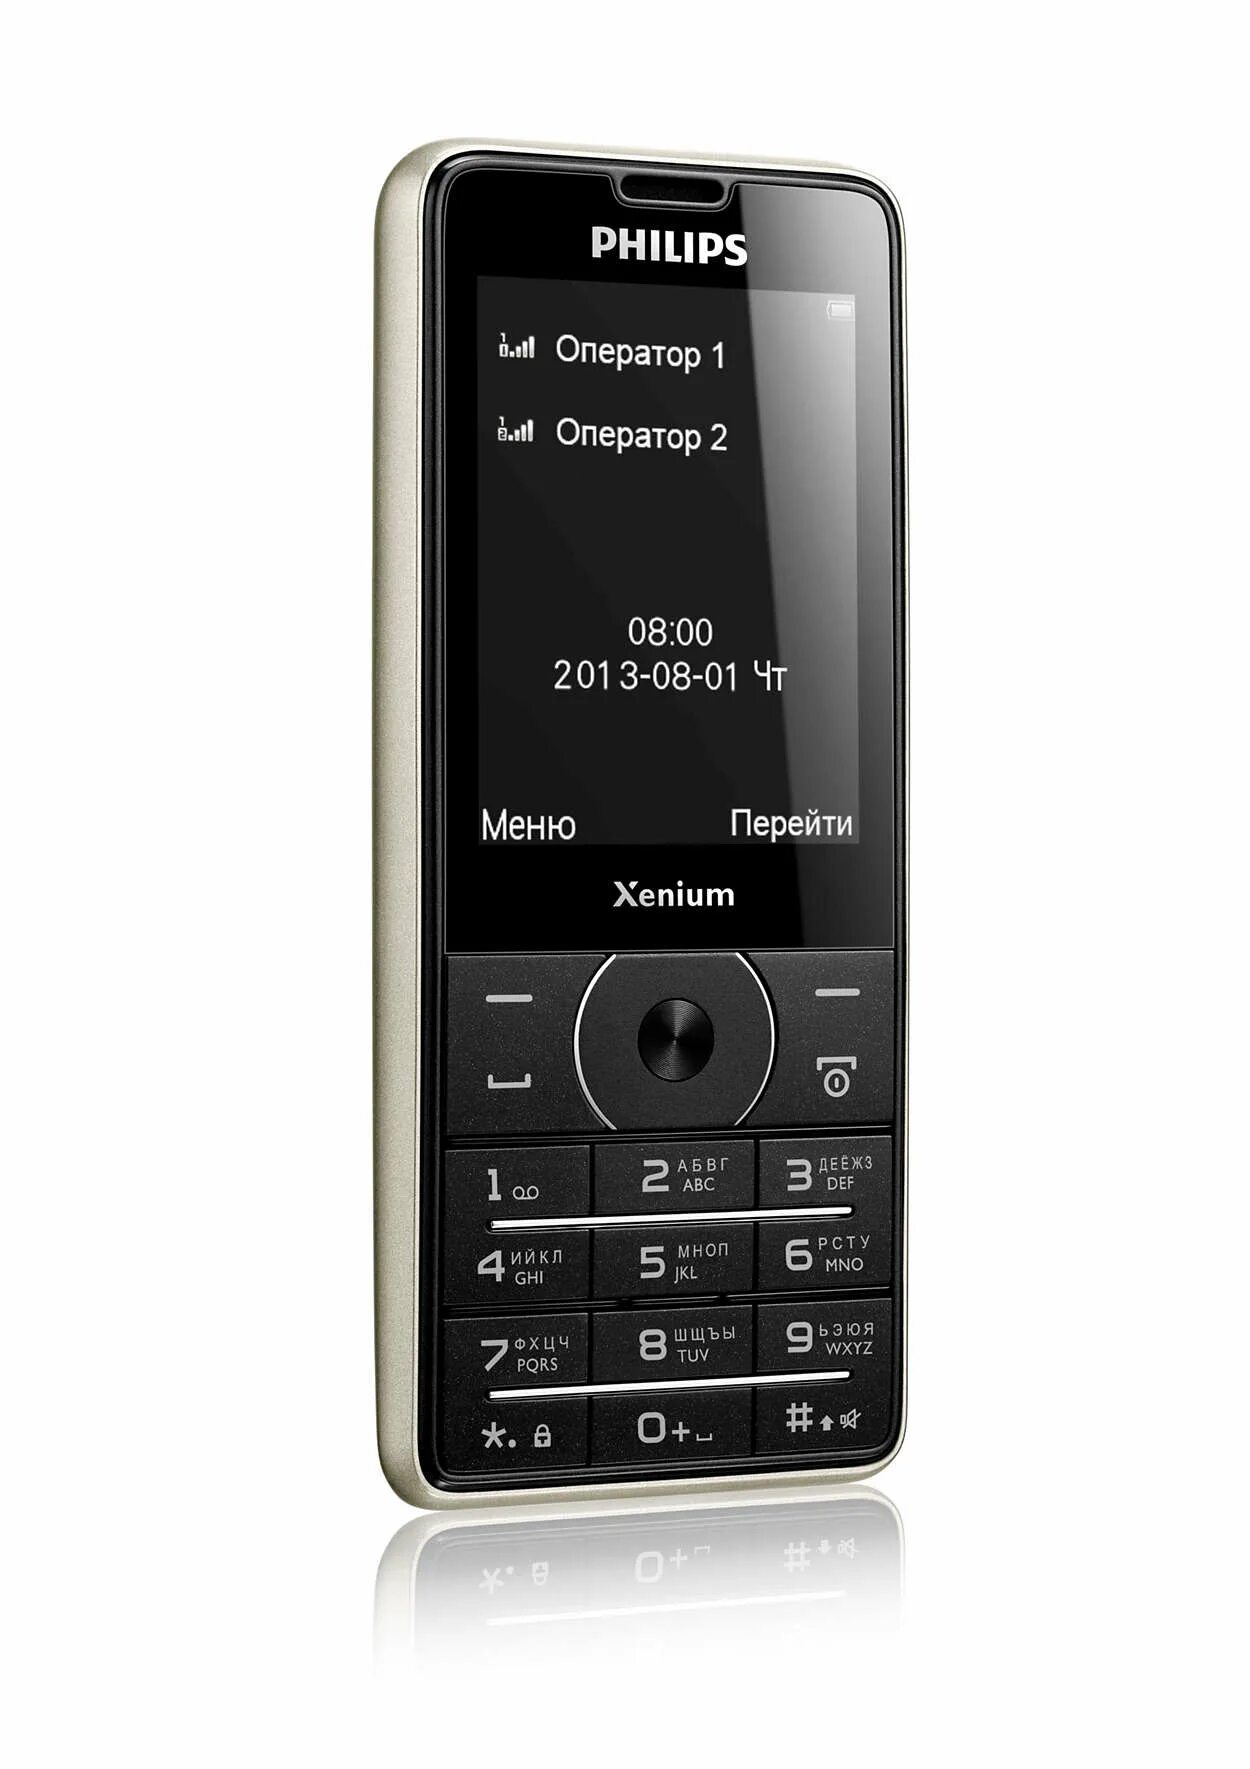 Philips Xenium x1560. Philips x1560 (Black). Philips Xenium 1560. Телефон Филипс Xenium 1560. Обзор телефонов philips